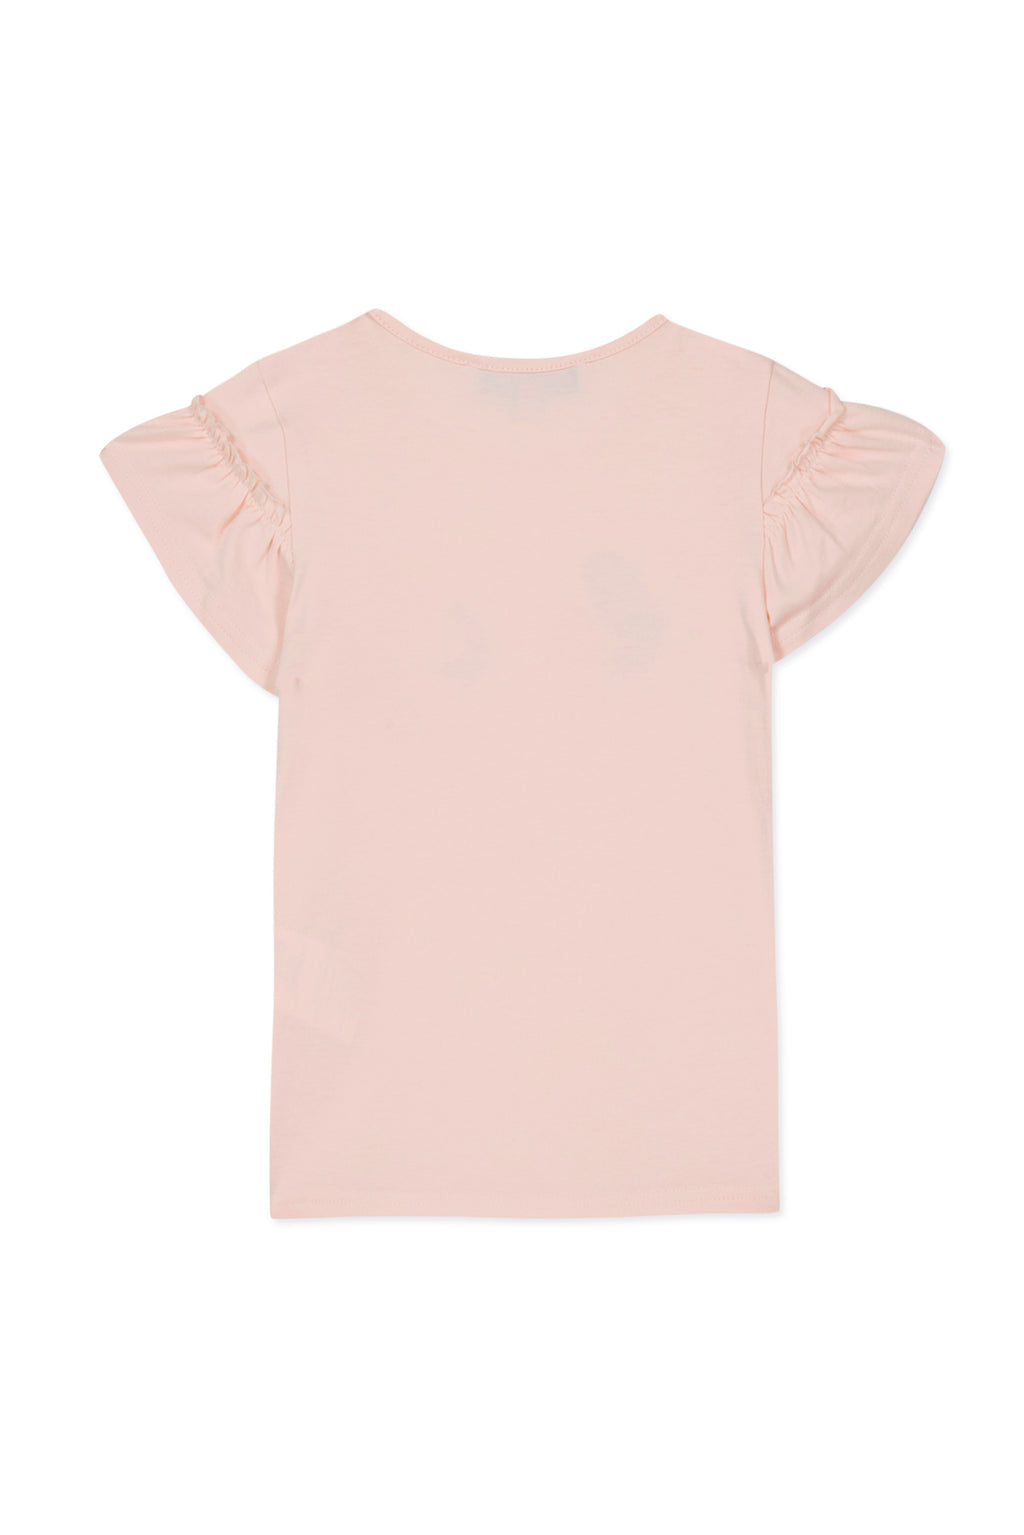 Camiseta - Rosa pálido Ilustración helado